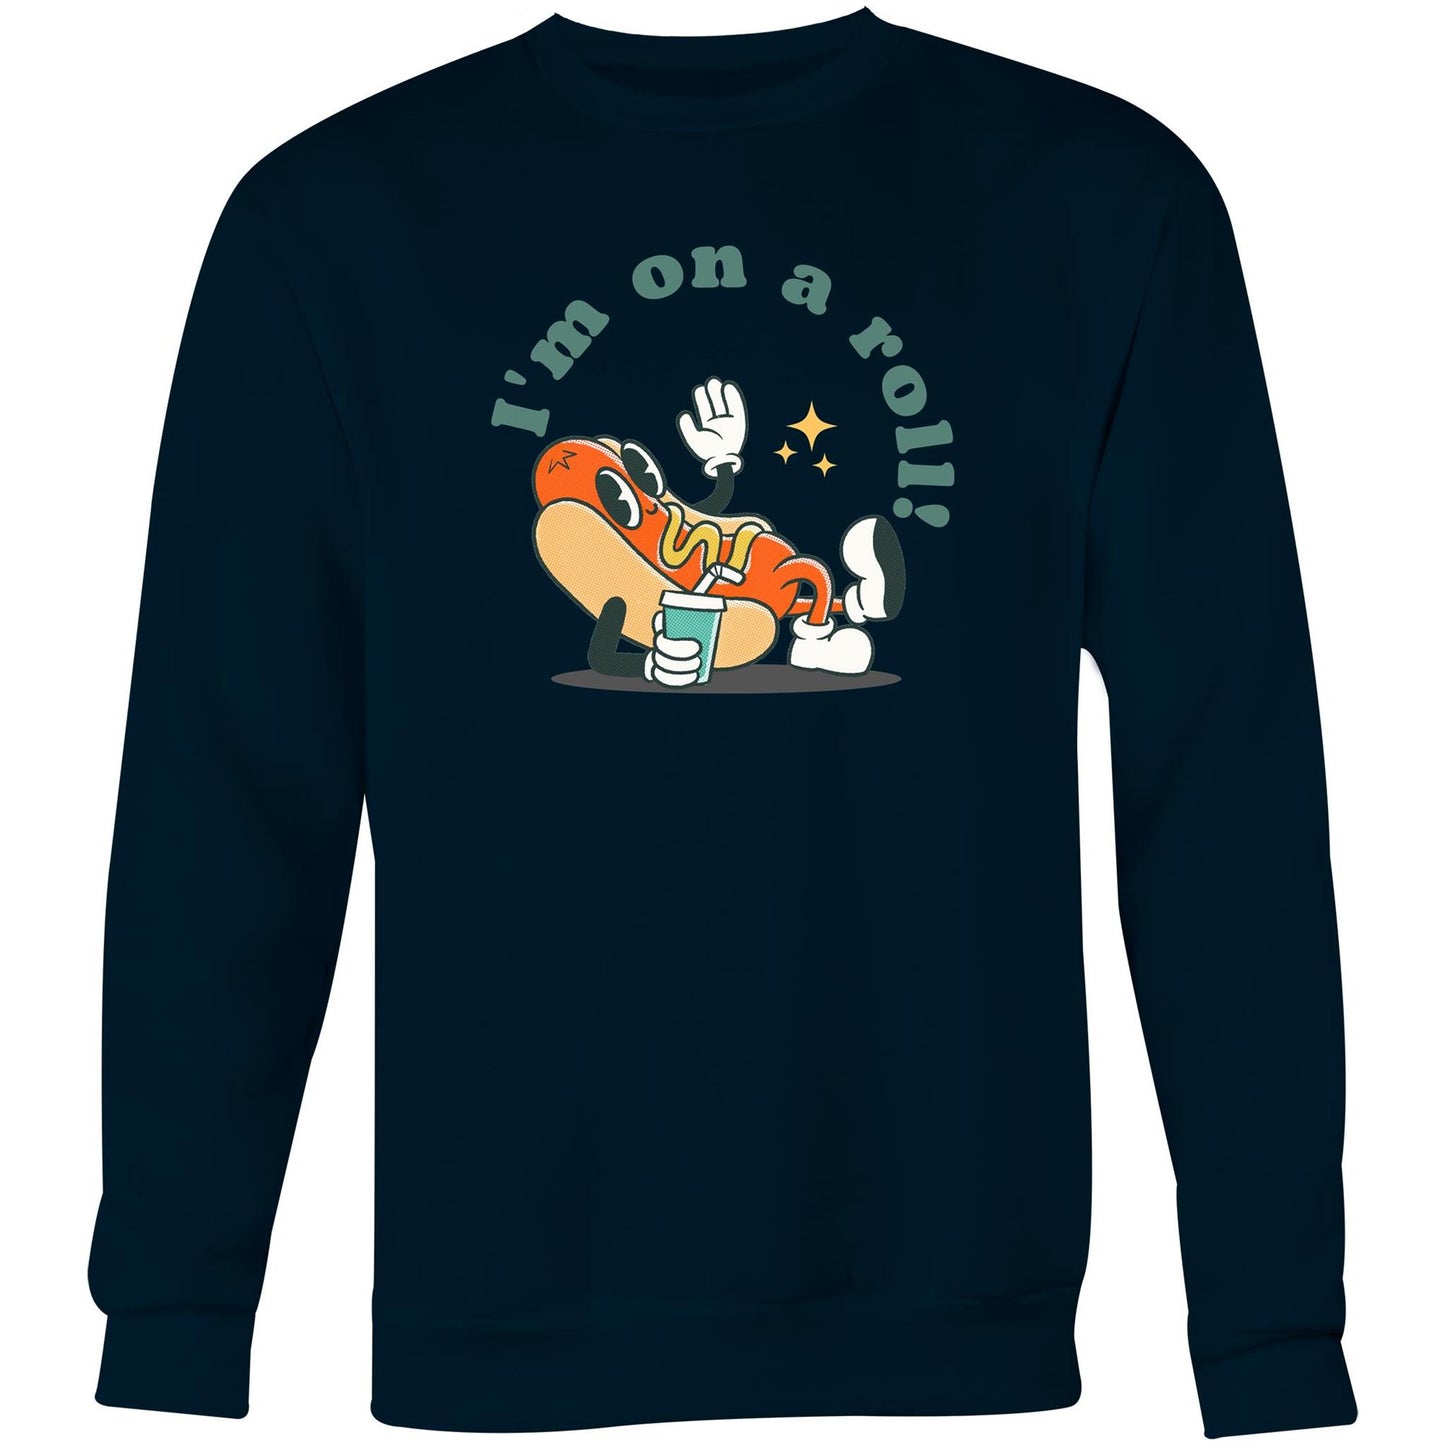 Hot Dog, I'm On A Roll - Crew Sweatshirt Navy Sweatshirt Food